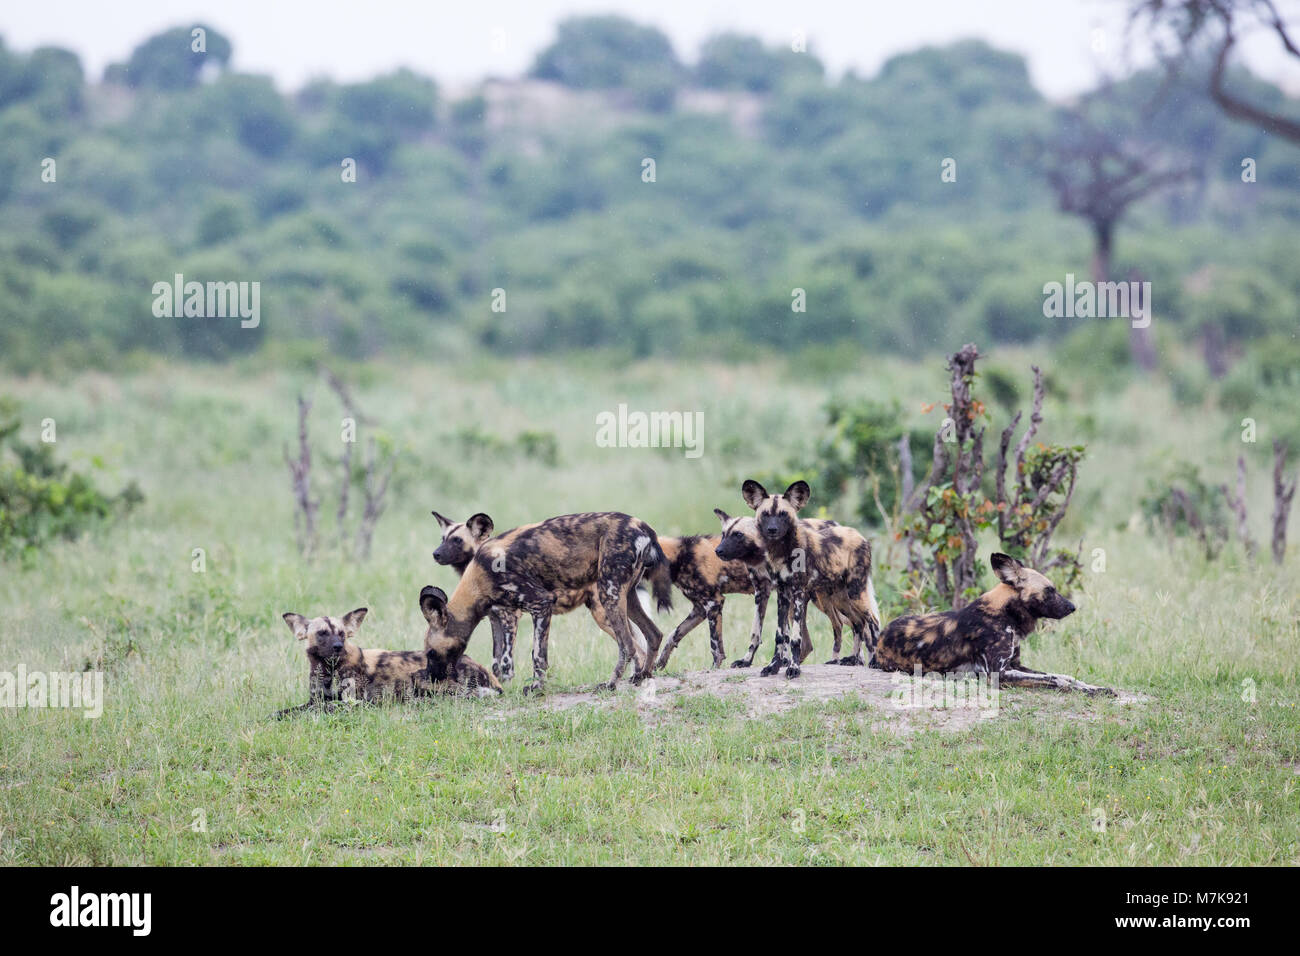 Afrikanische Jagd Hund (Lycaon pictus), gewachsen Family Pack von sieben. Warten auf Entscheidung zu bewegen und Suche nach wahrscheinlich Beutetier. Ruht auf einem niedrigen Mou Stockfoto